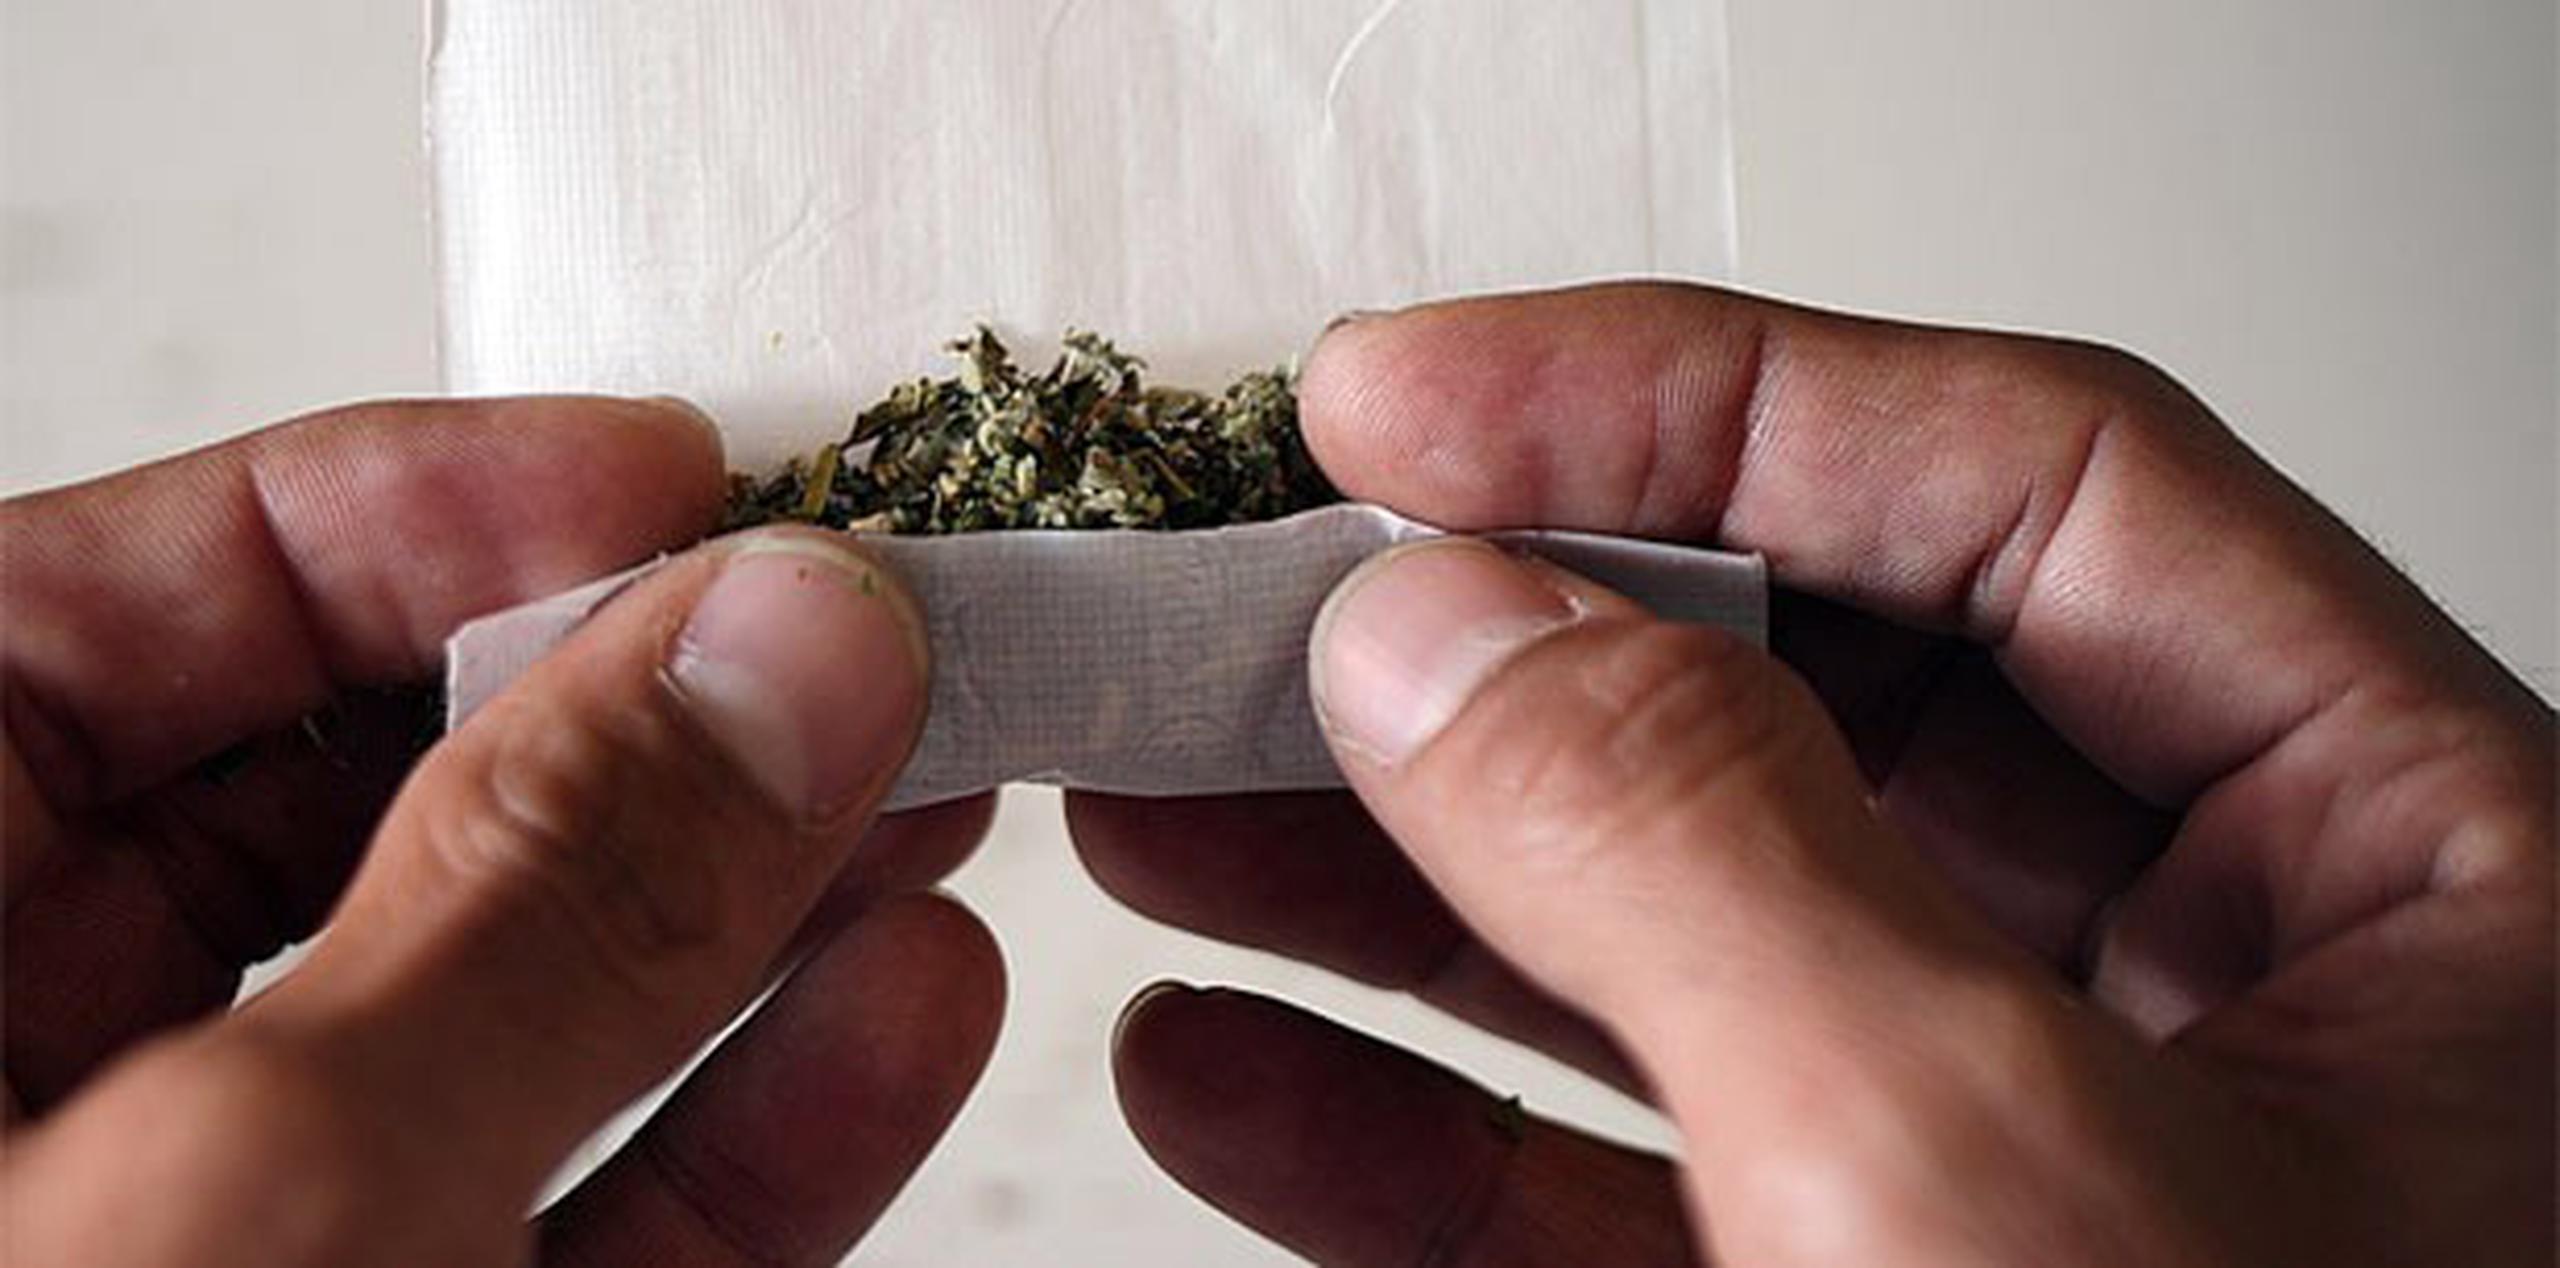 La marihuana sigue clasificada como una droga ilegal bajo la ley federal estadounidense. (Archivo)